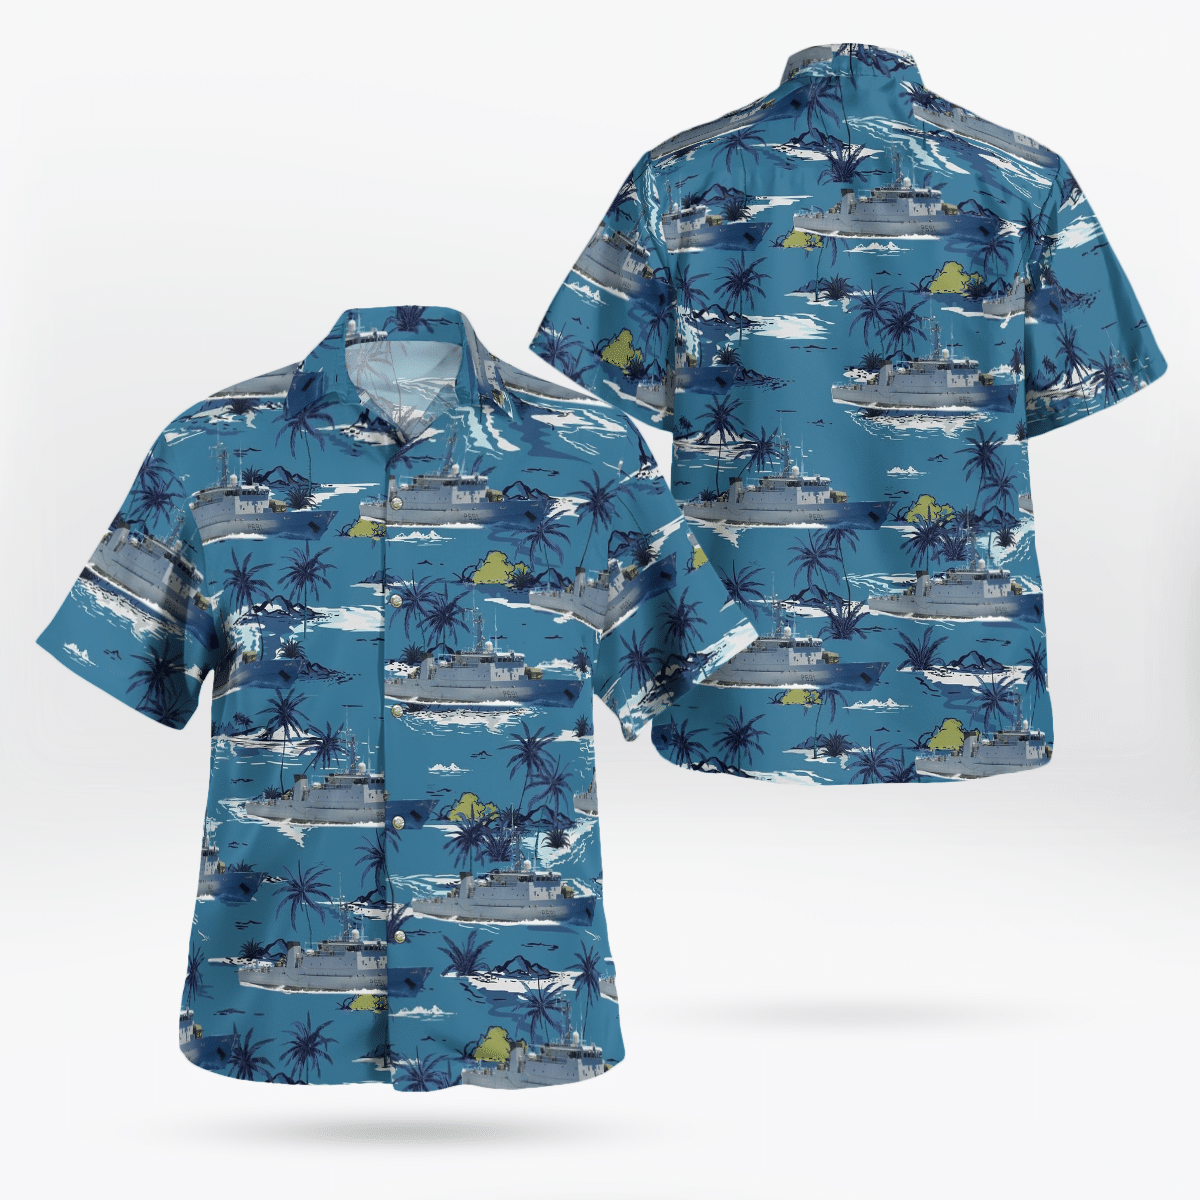 You won't regret buying these Aloha Shirt 219